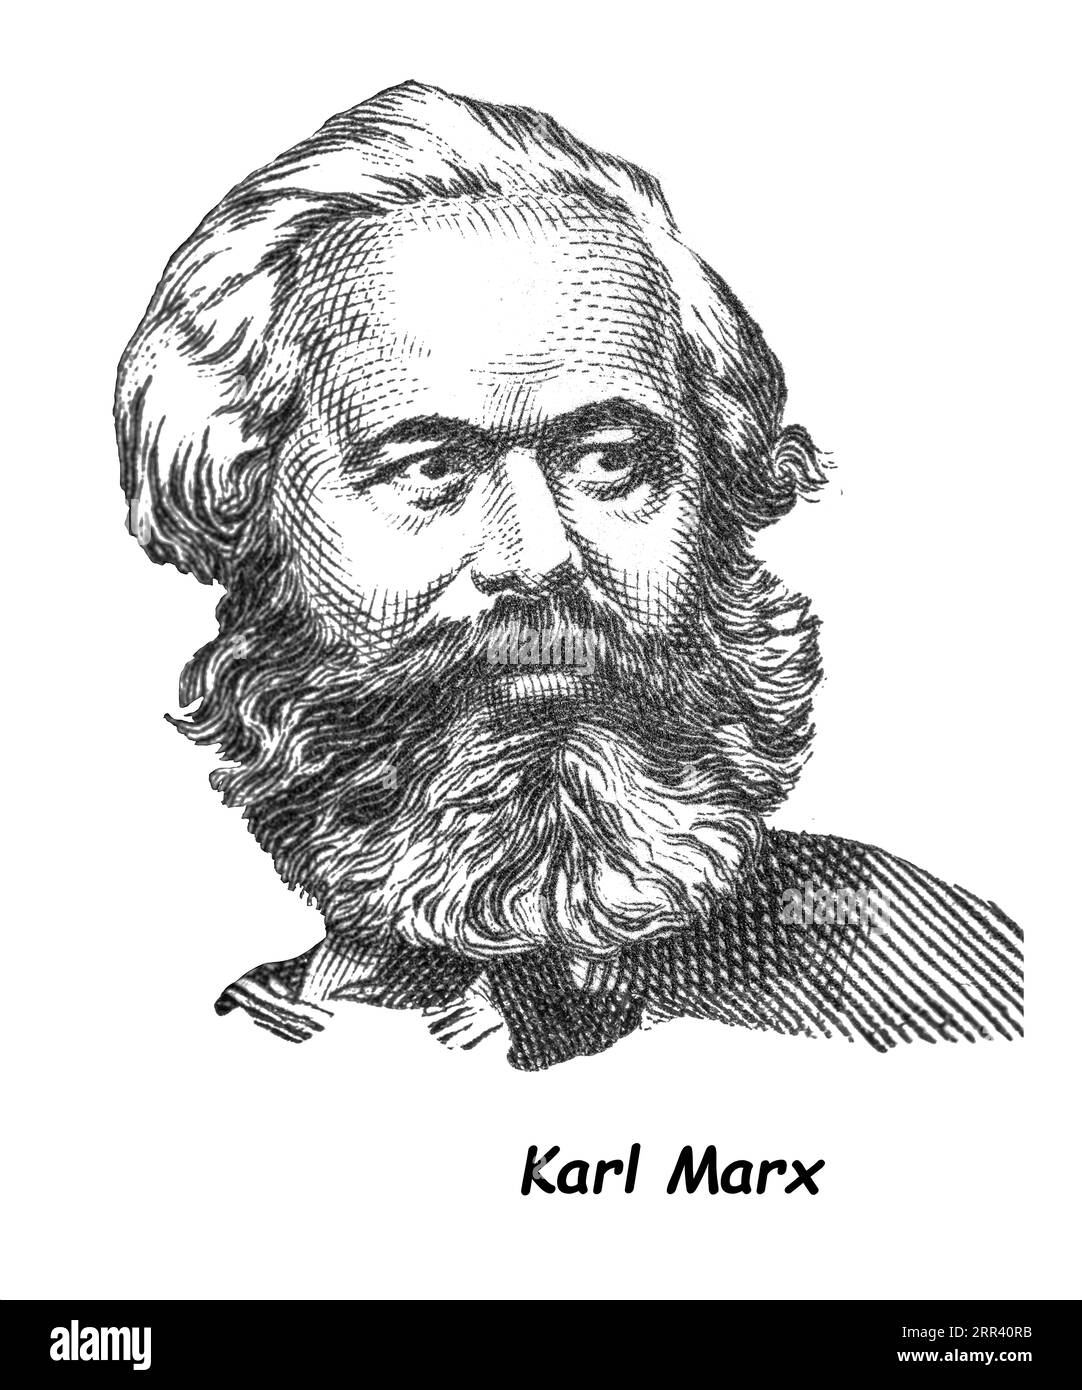 LUGA, RUSSIA - 12 SETTEMBRE 2018: Un francobollo stampato dalla RUSSIA (URSS) mostra Karl Marx - filosofo tedesco, economista, teorico politico, sociologo, Foto Stock